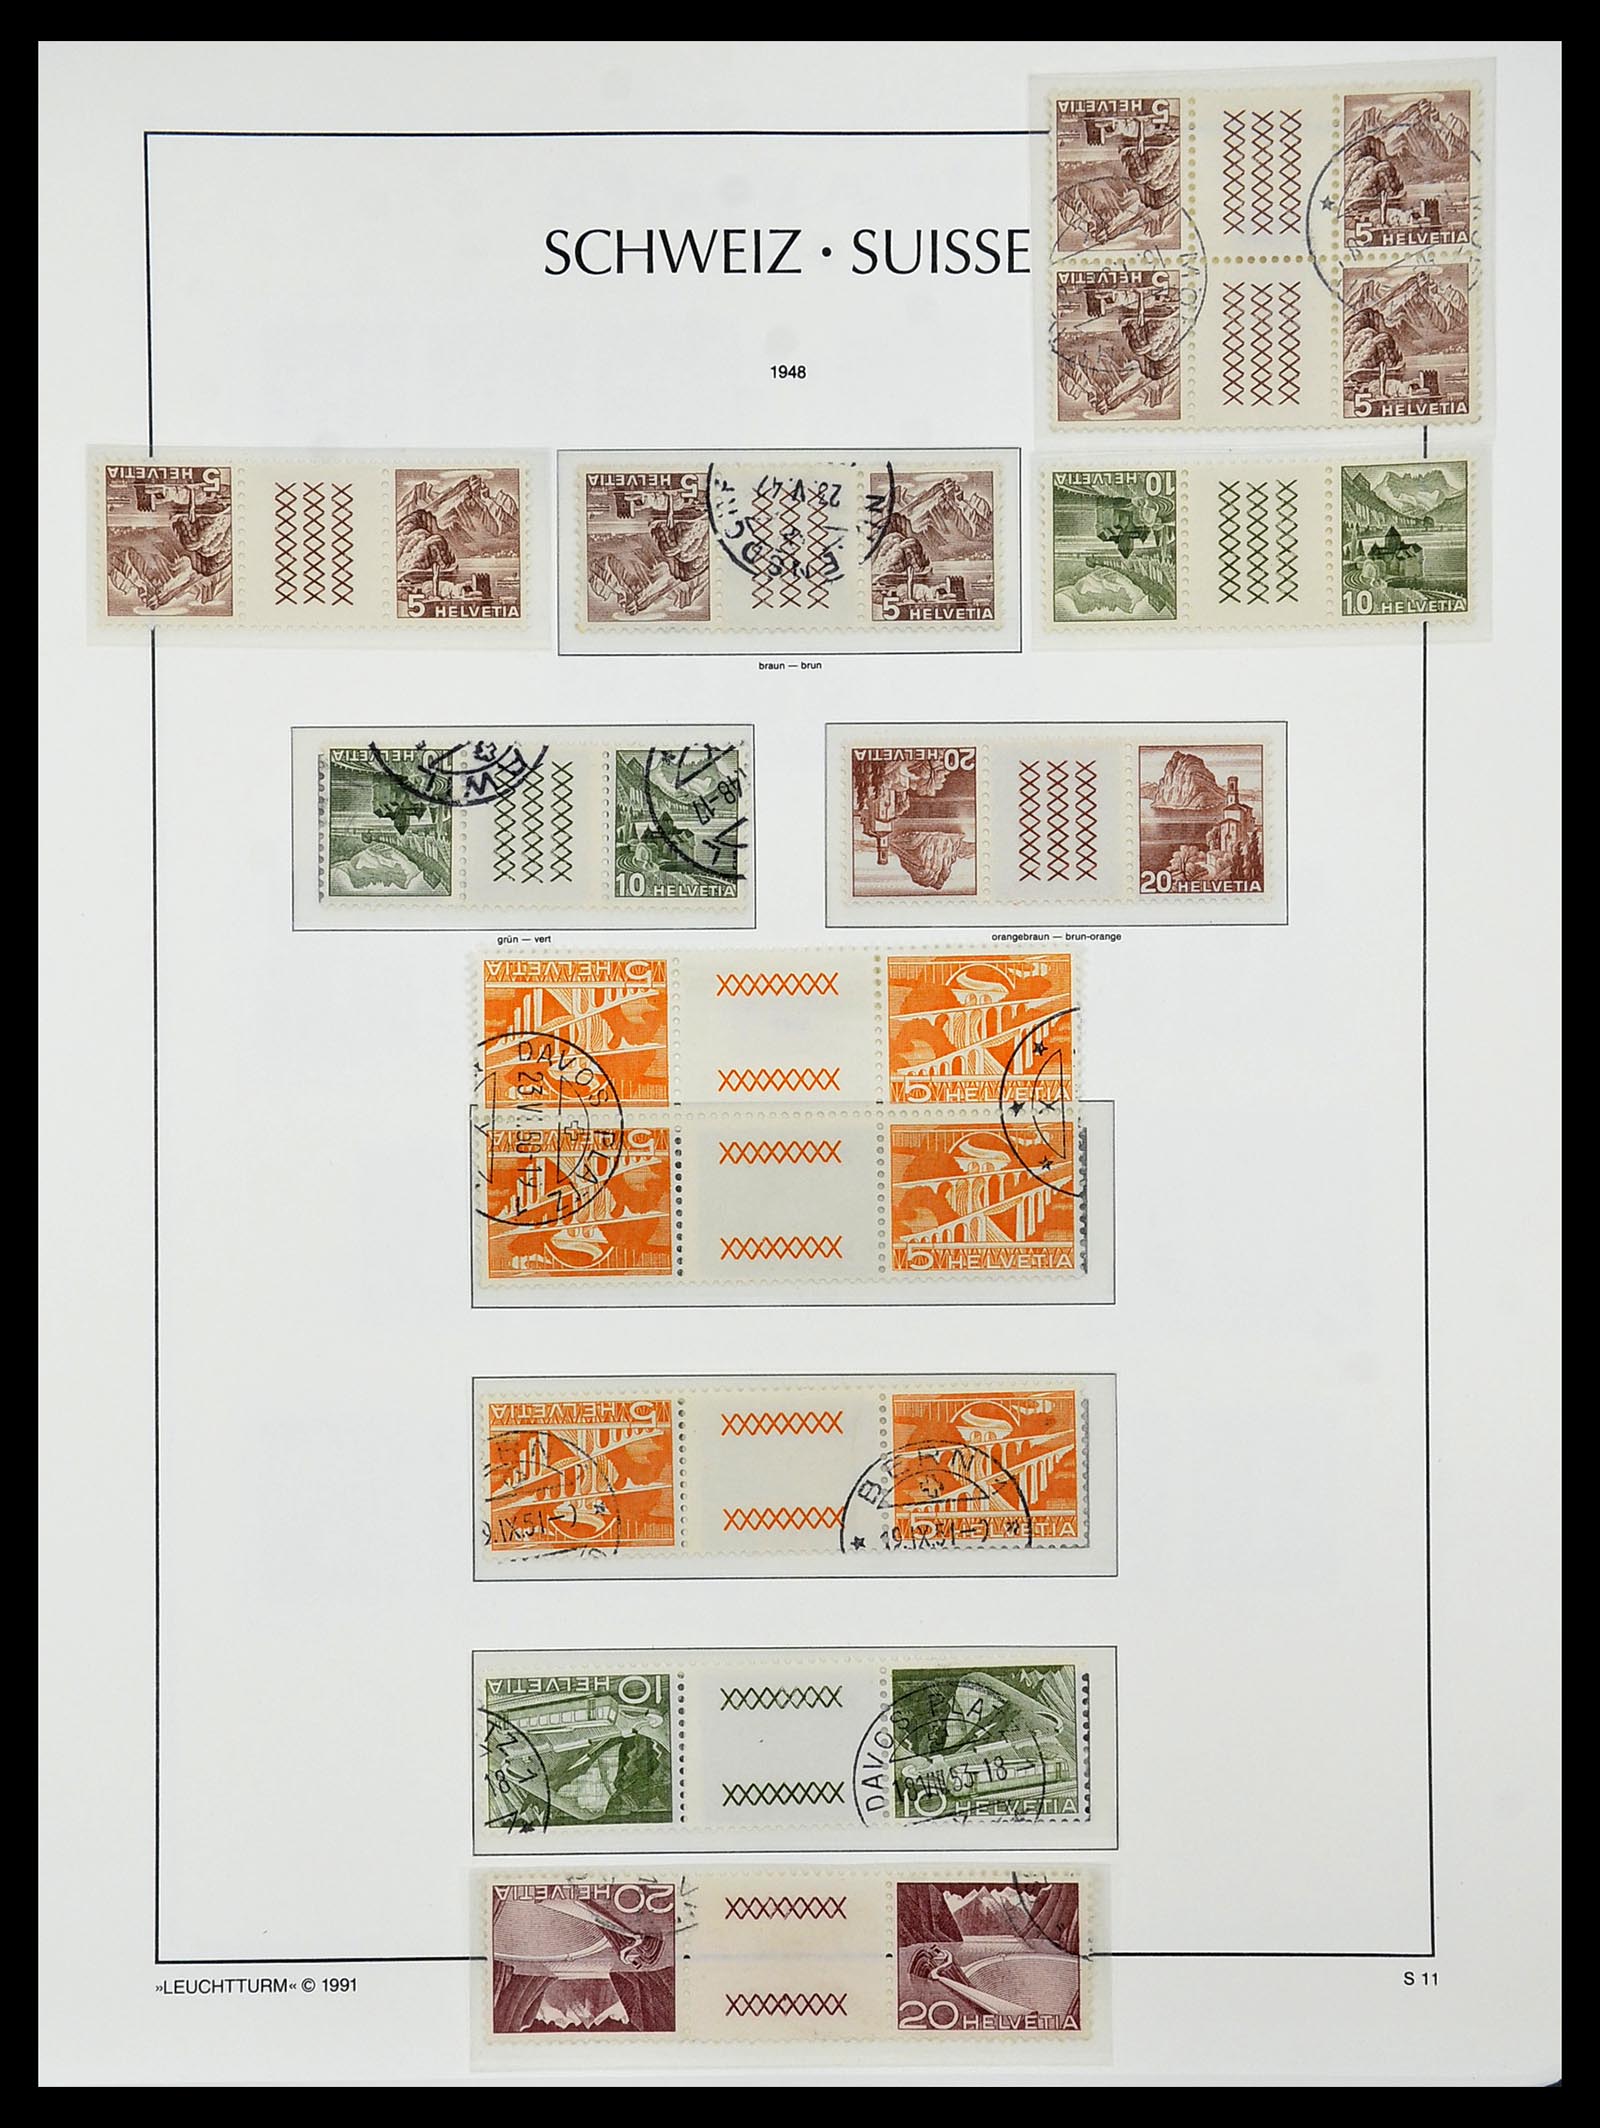 34557 019 - Postzegelverzameling 34557 Zwitserland combinaties 1909-1953.